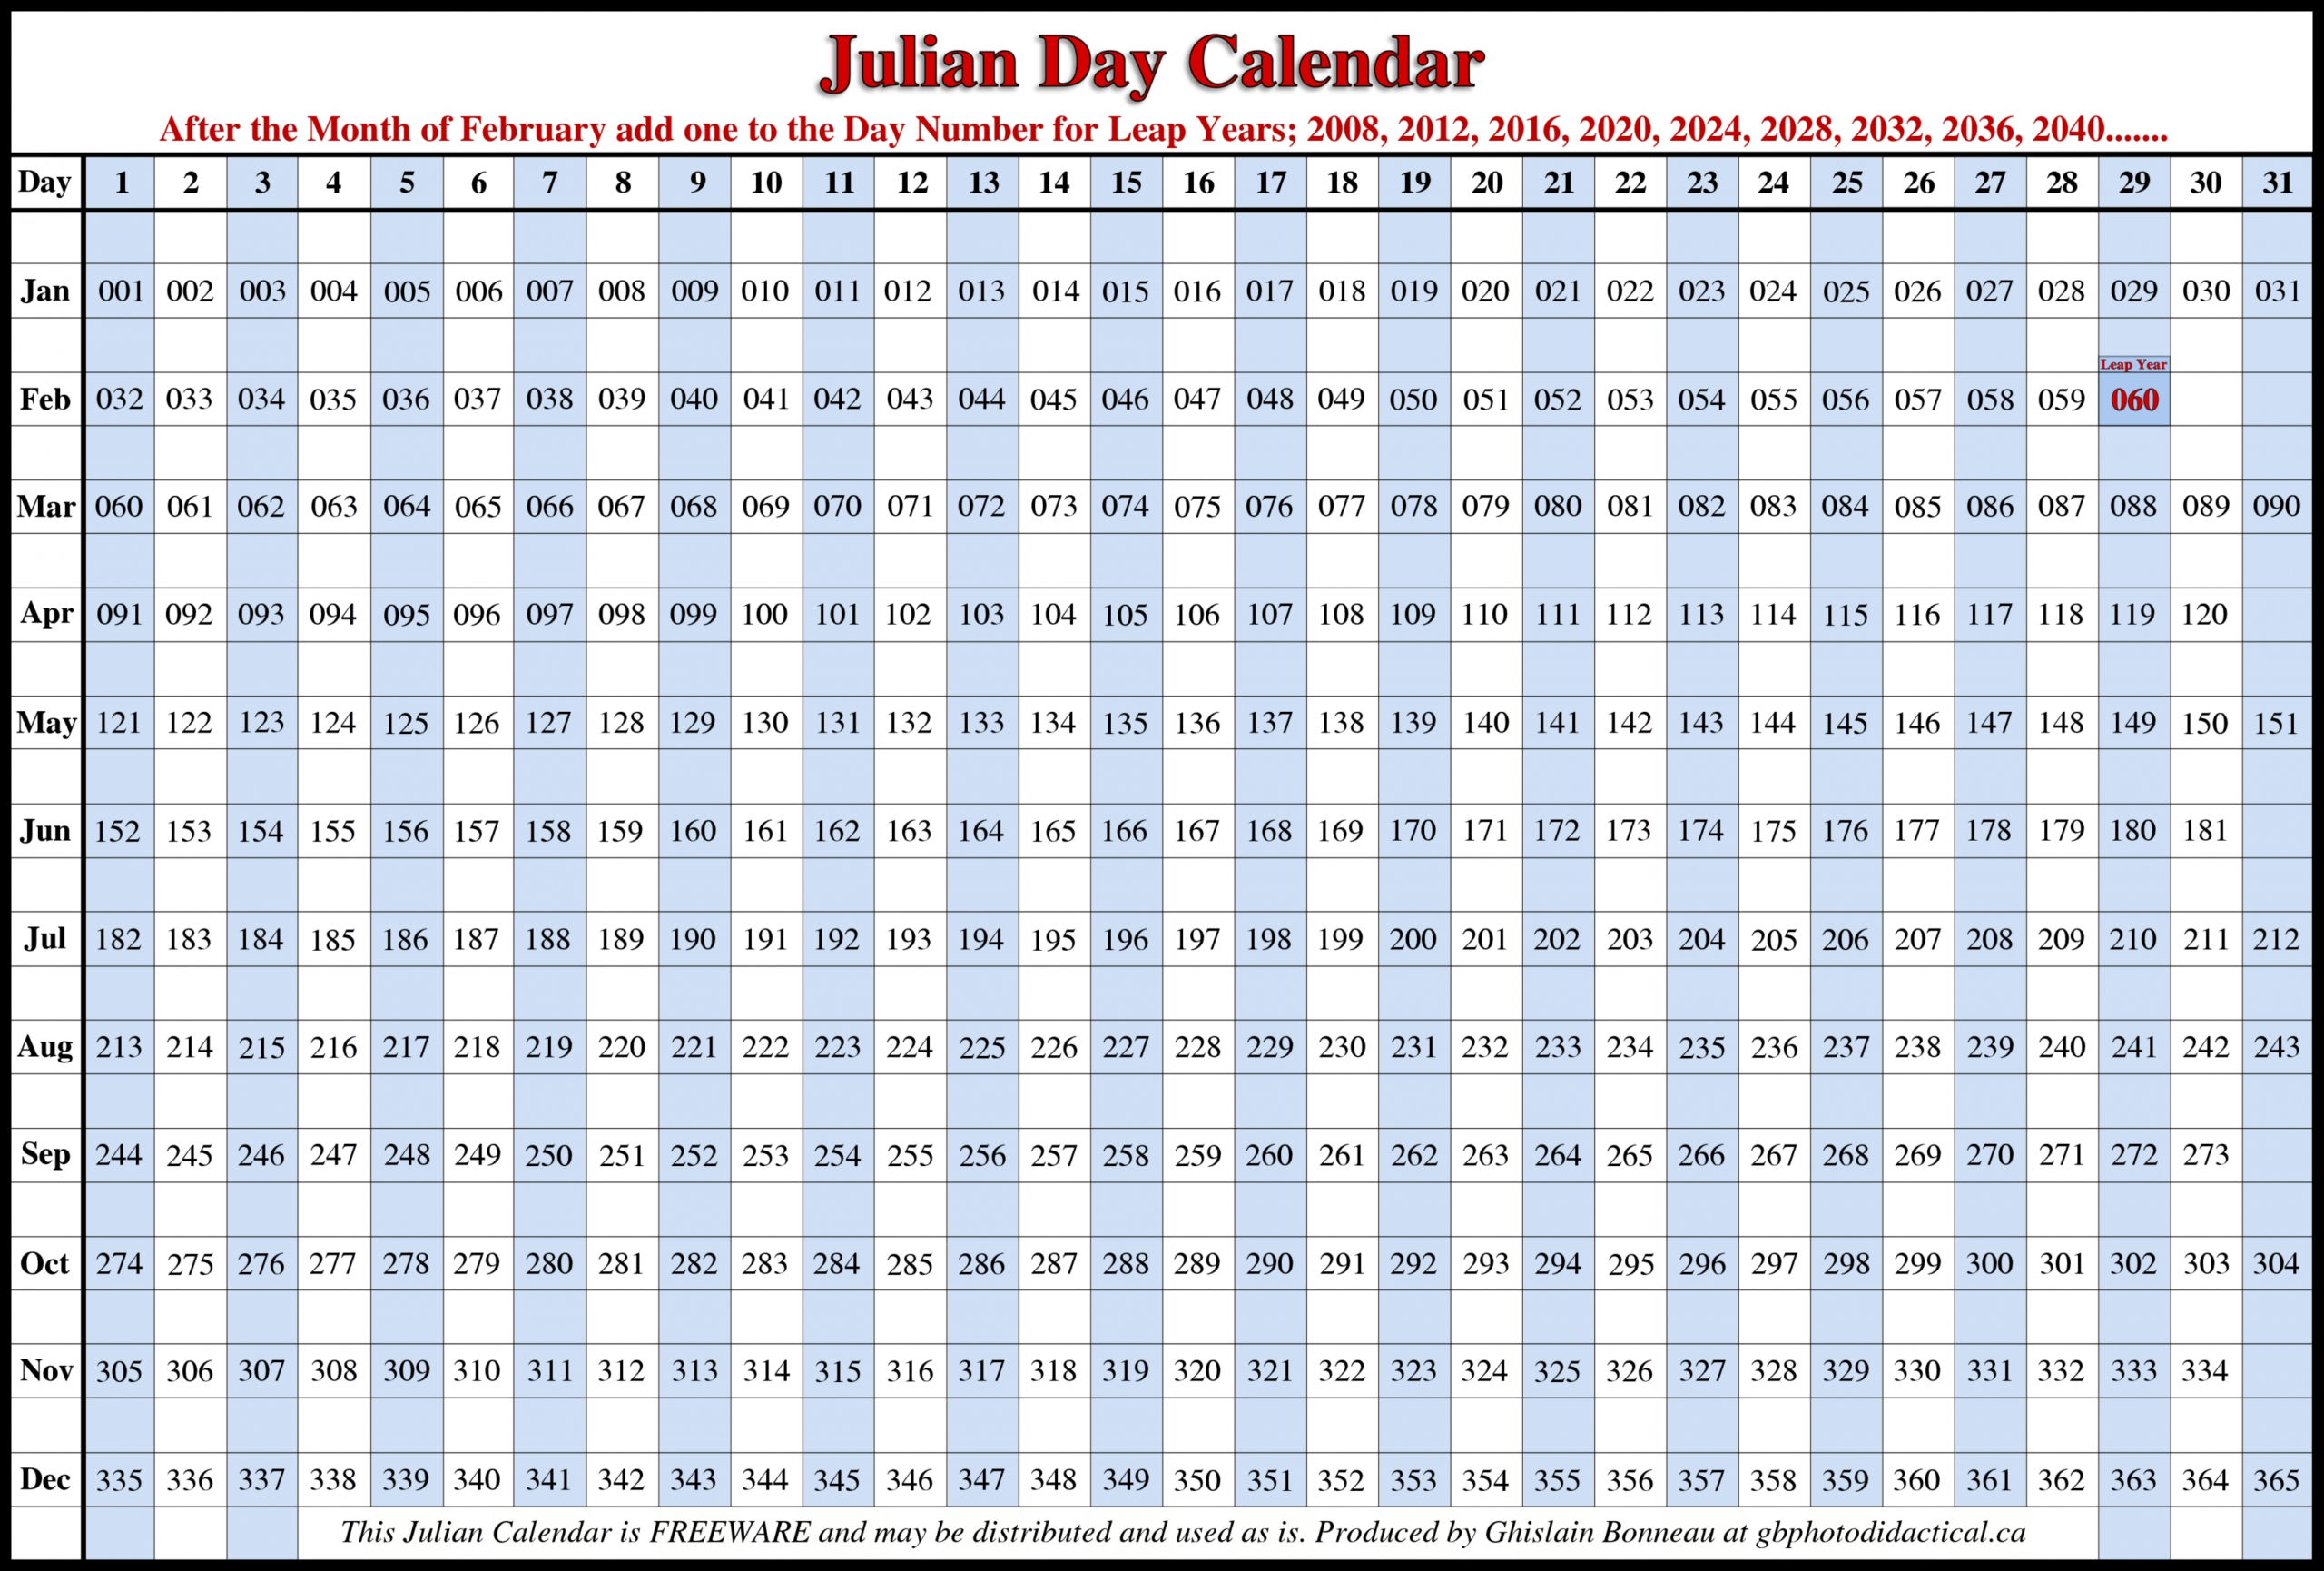 Julian Date Calendar 2021